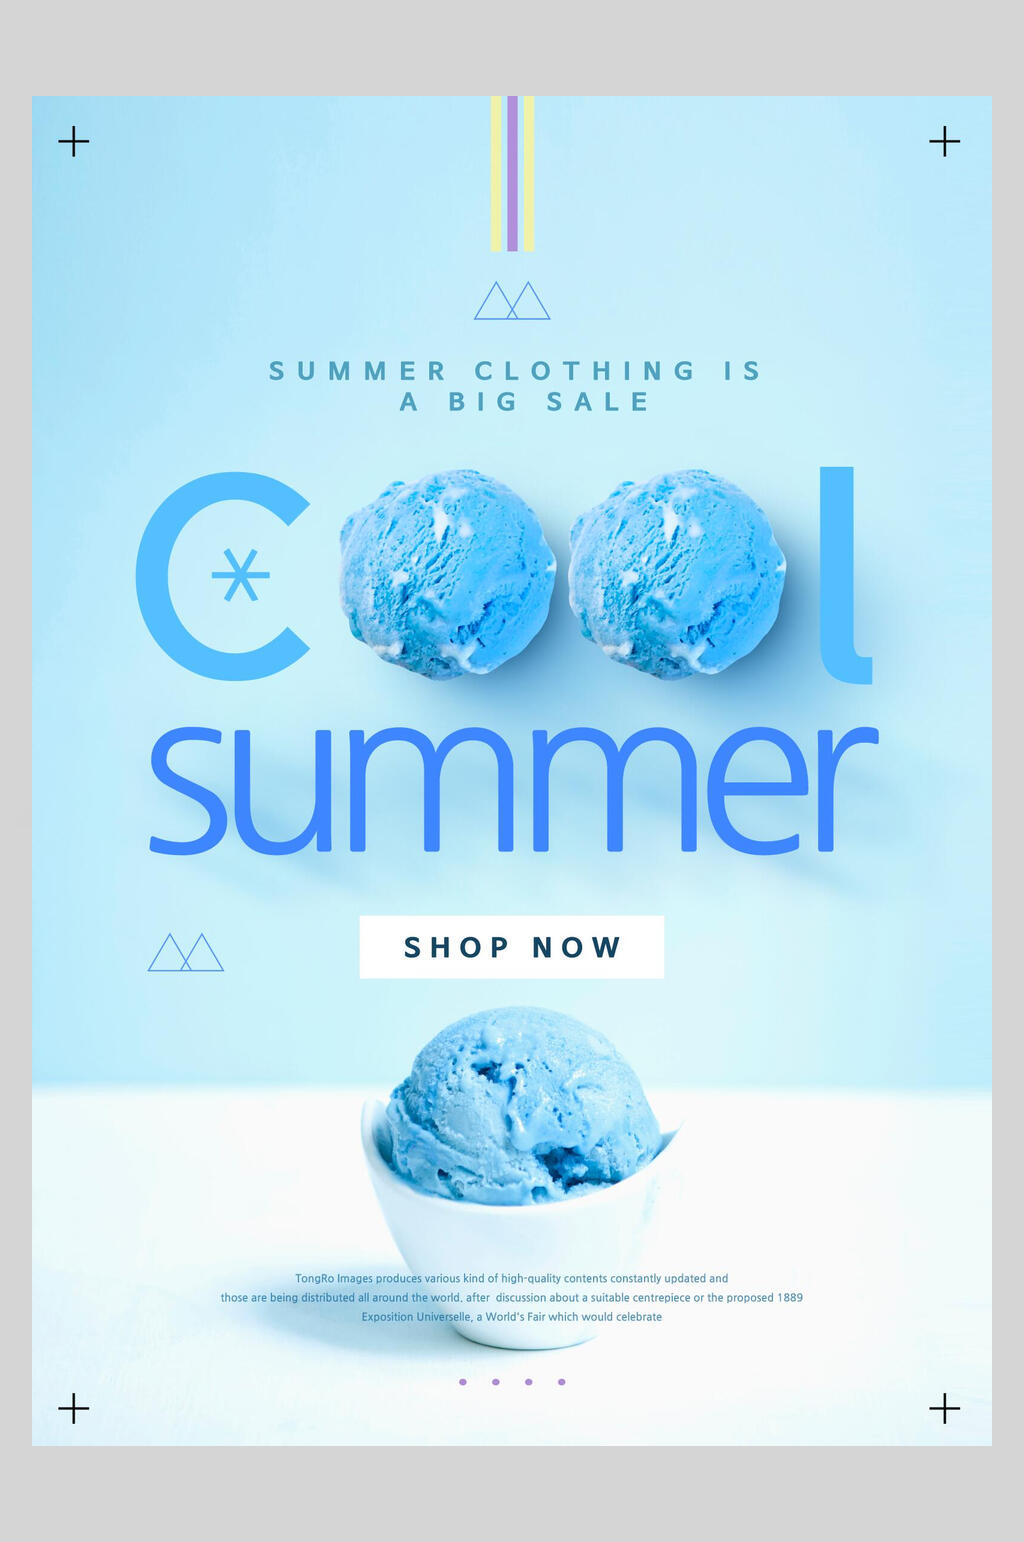 众图网独家提供cool夏日冰淇淋促销海报设计素材免费下载,本作品是由